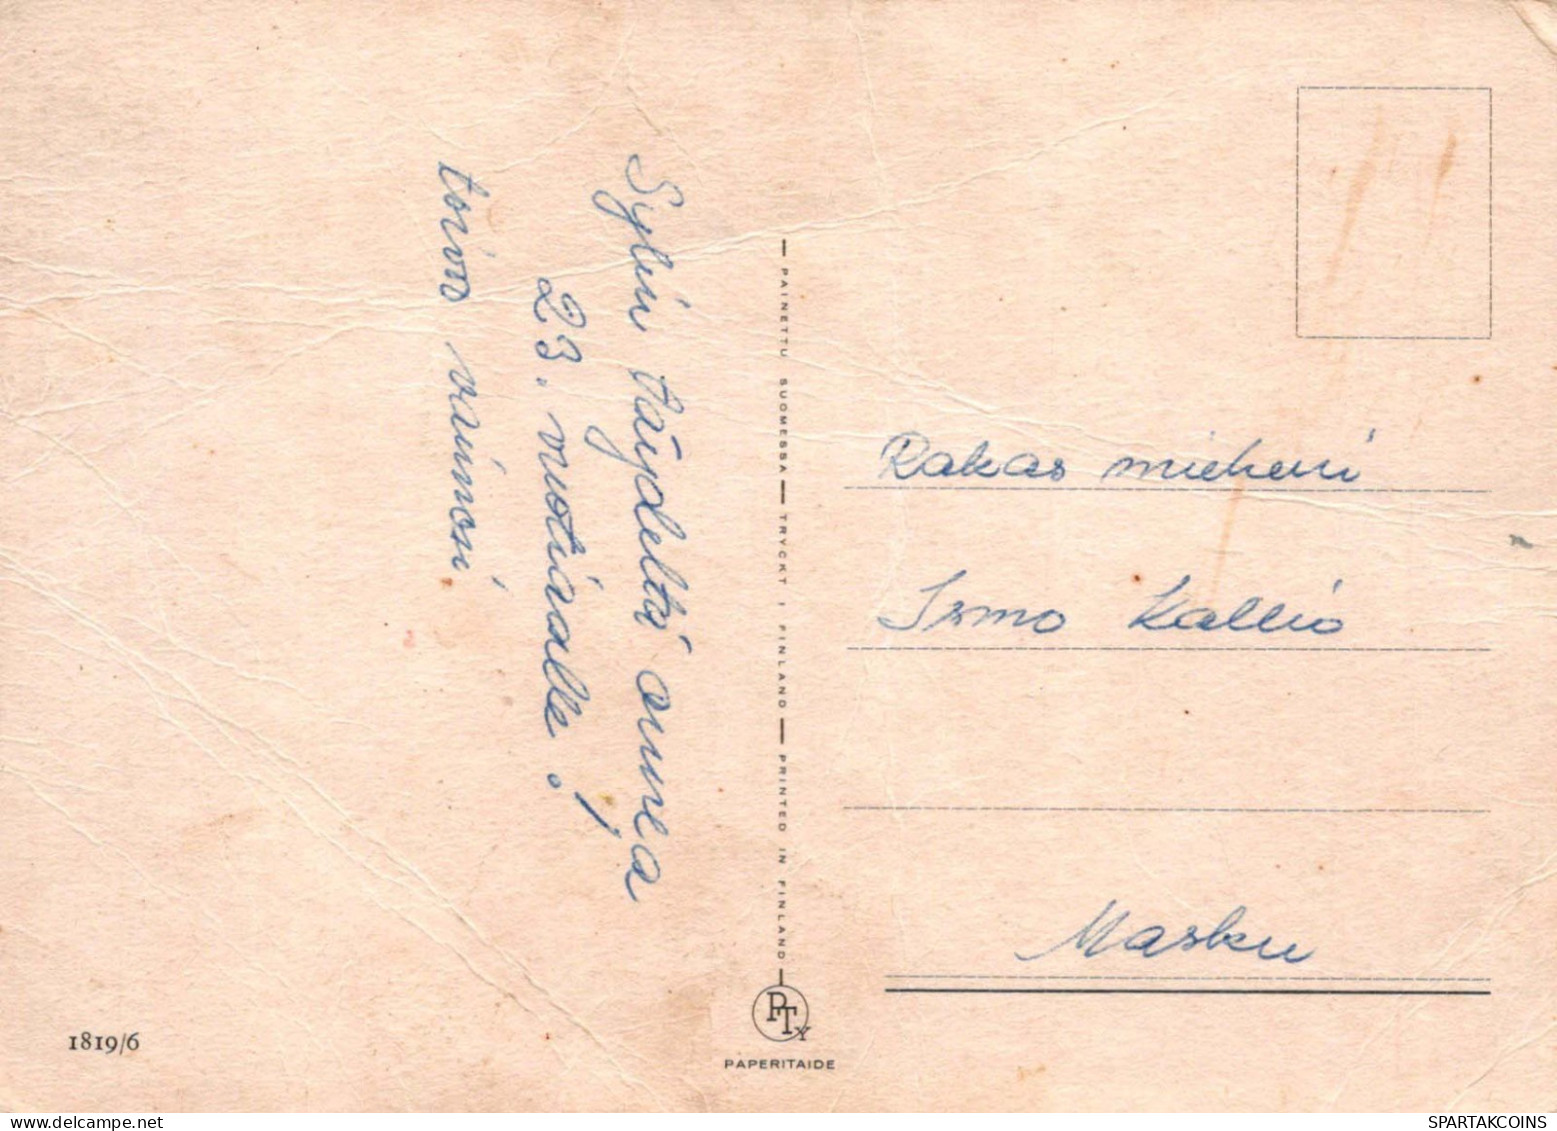 NIÑOS NIÑOS Escena S Paisajes Vintage Tarjeta Postal CPSM #PBT713.ES - Scenes & Landscapes